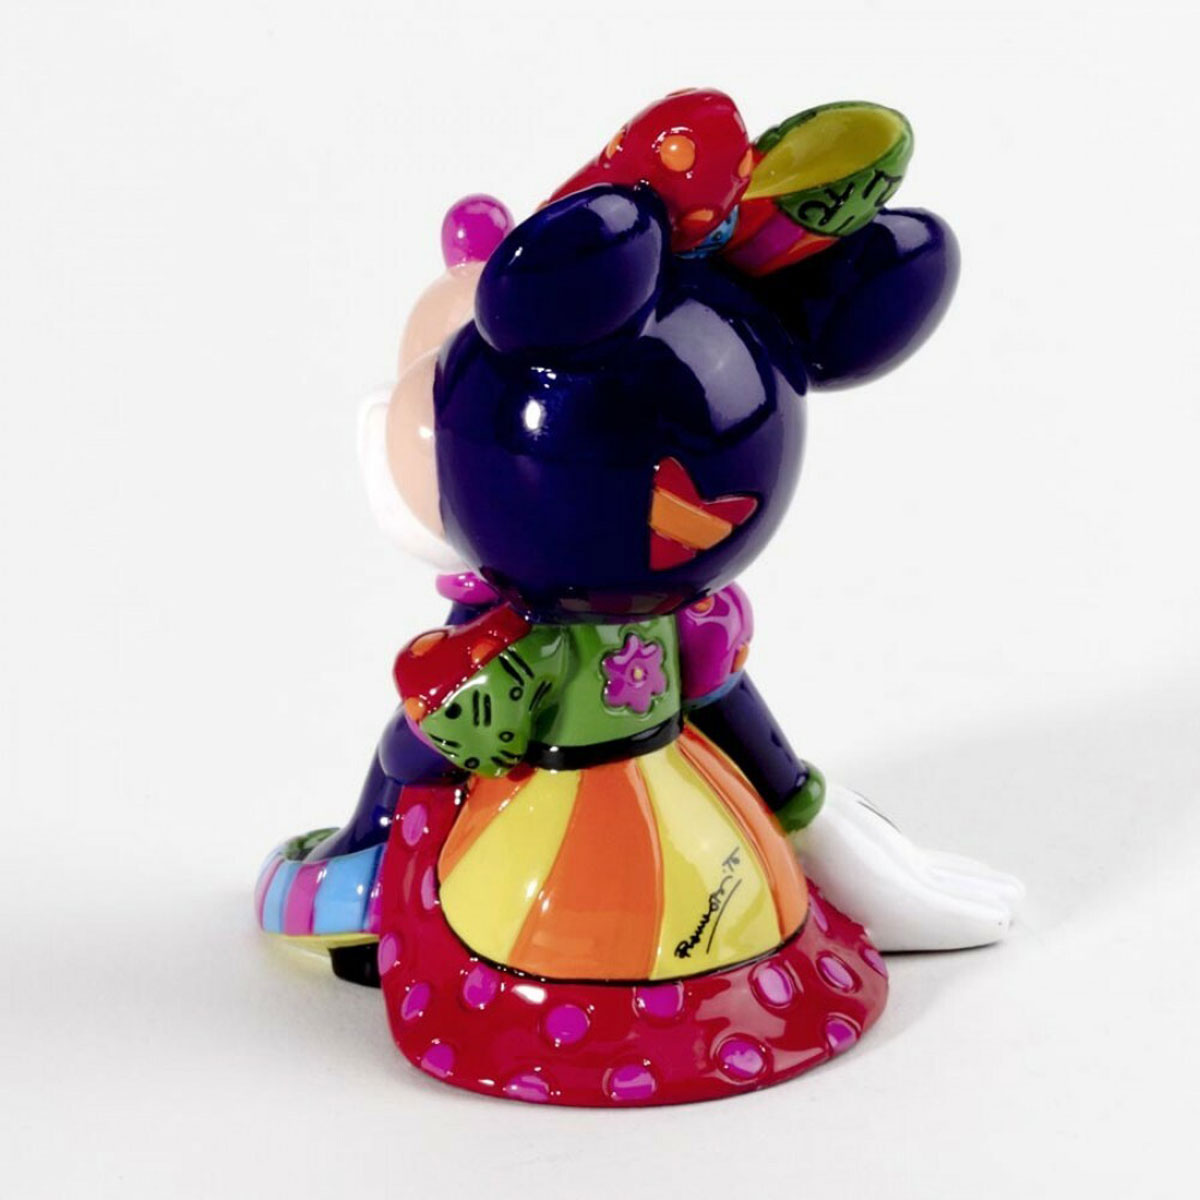 Minnie Figurine Collection By Romero Britto